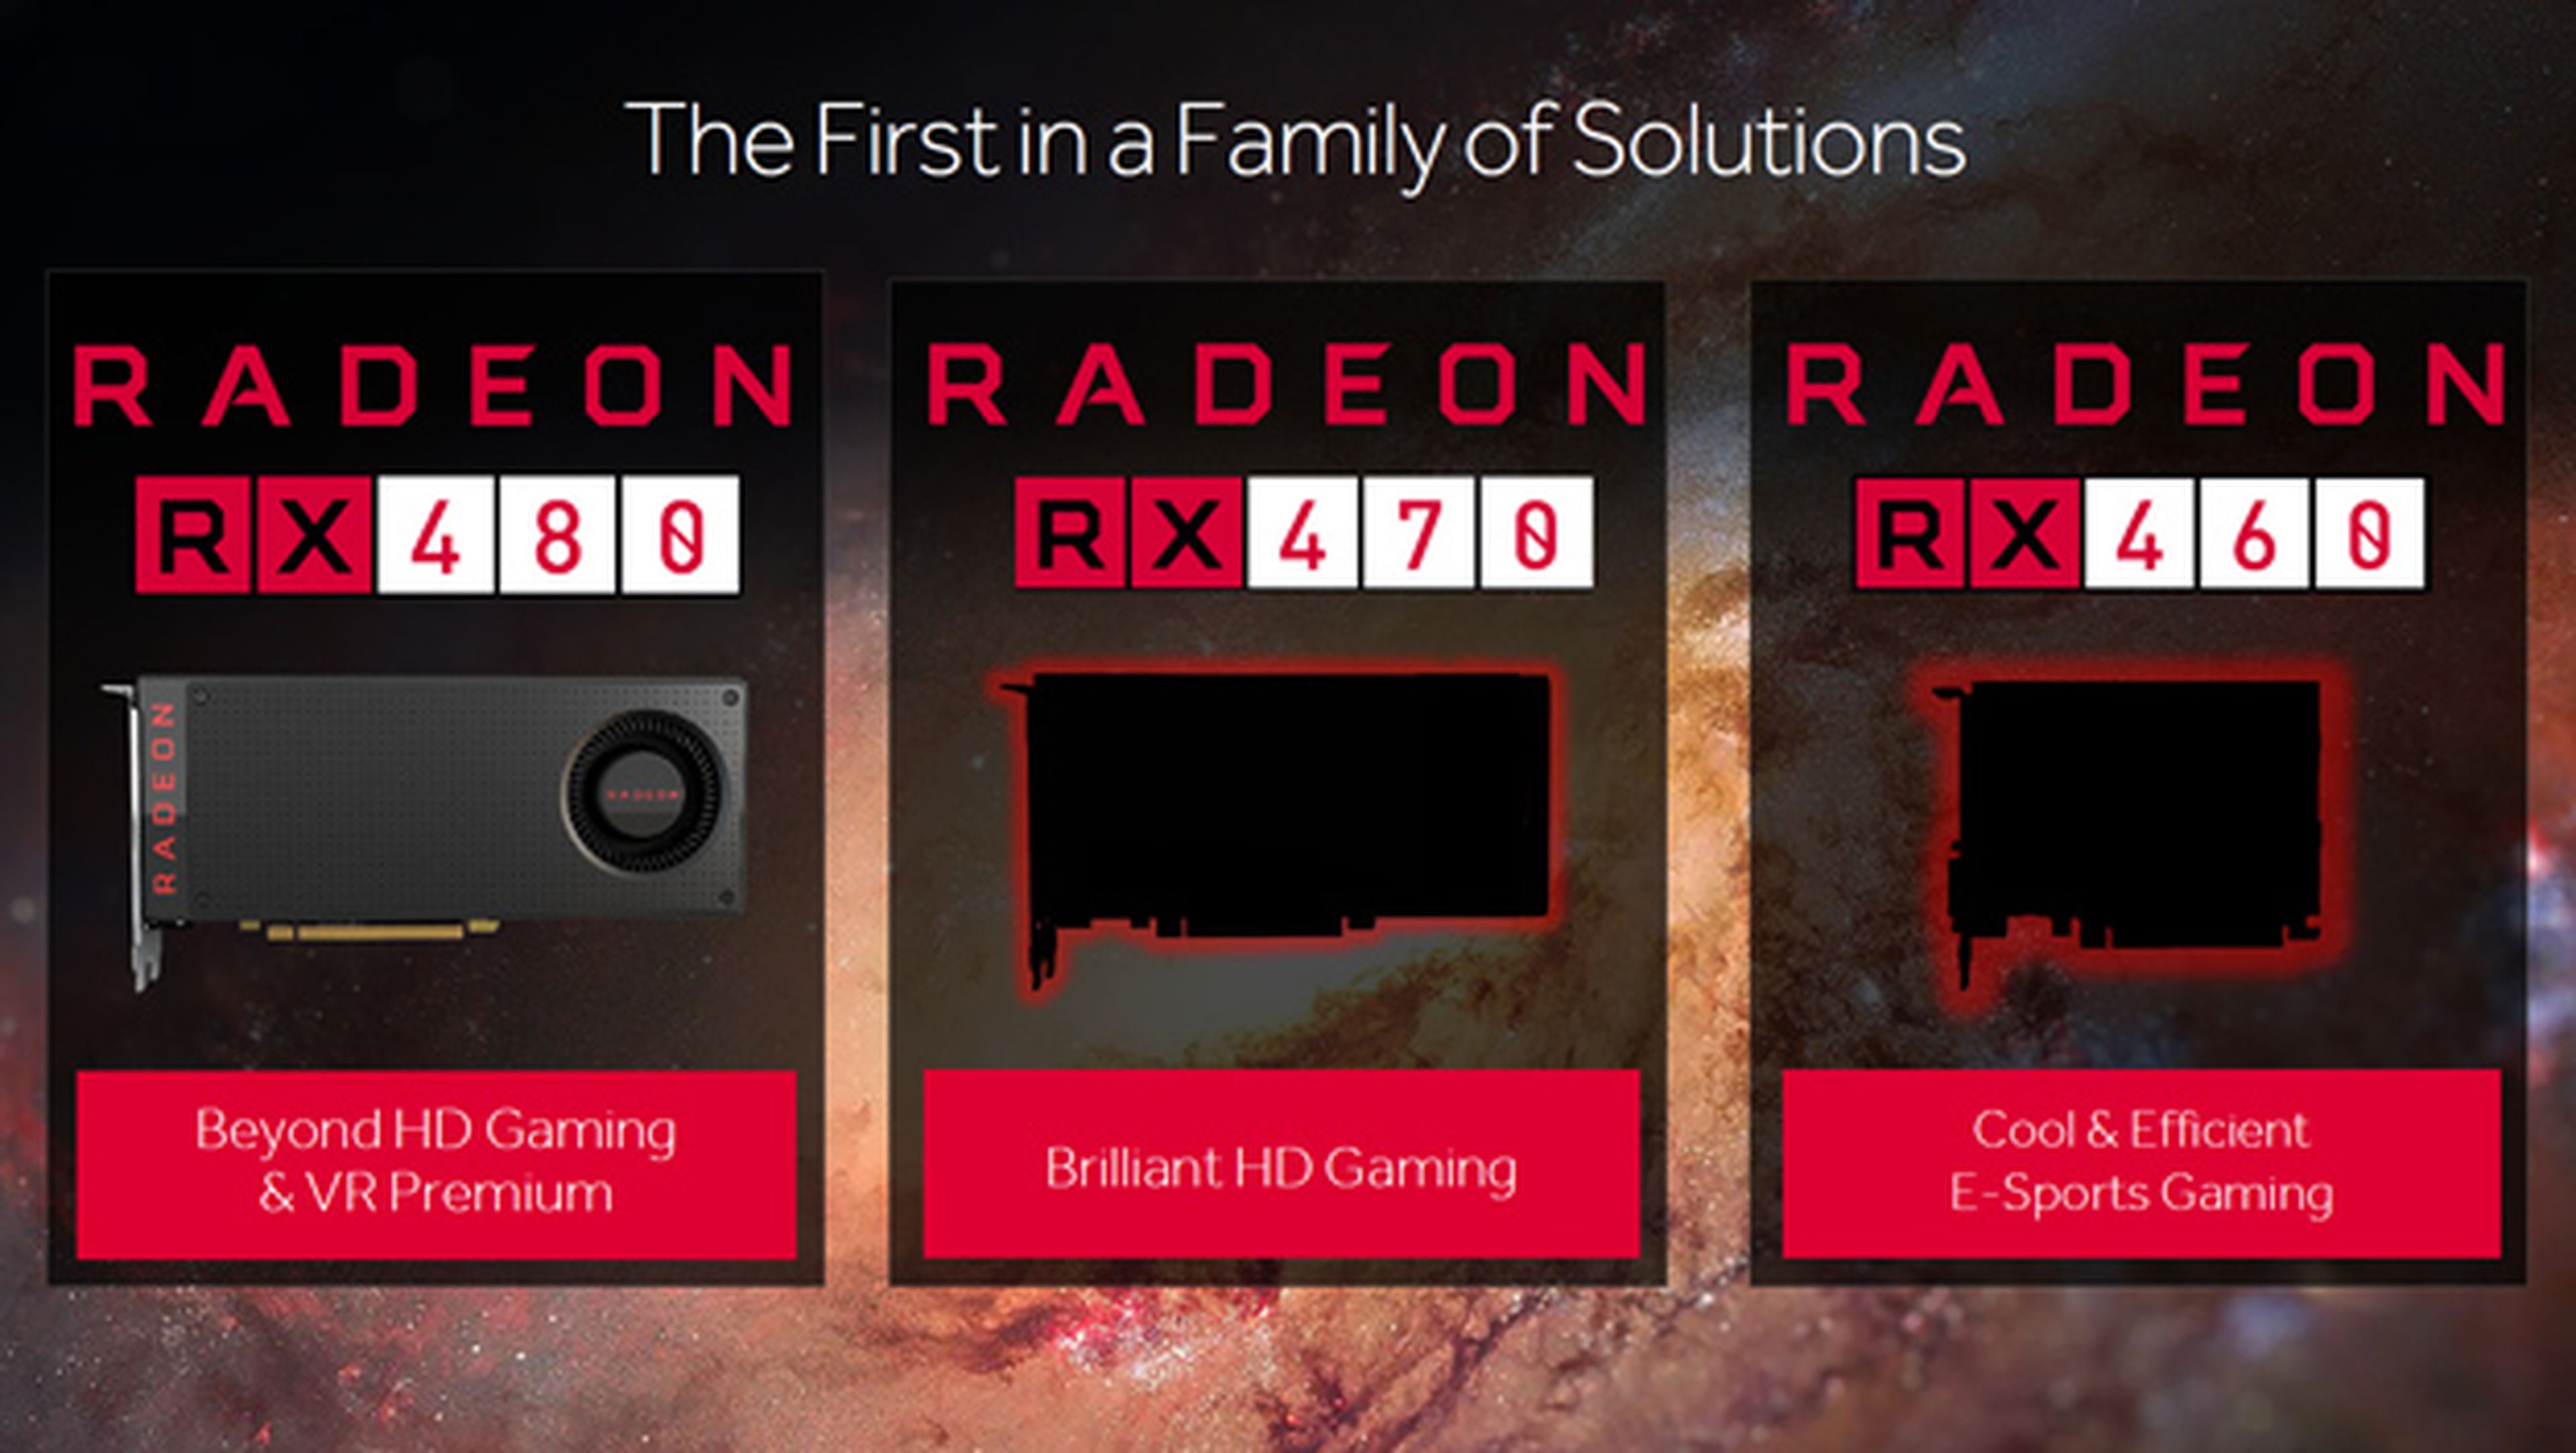 AMD confirma las especificaciones de Polaris 10 y Polaris 11